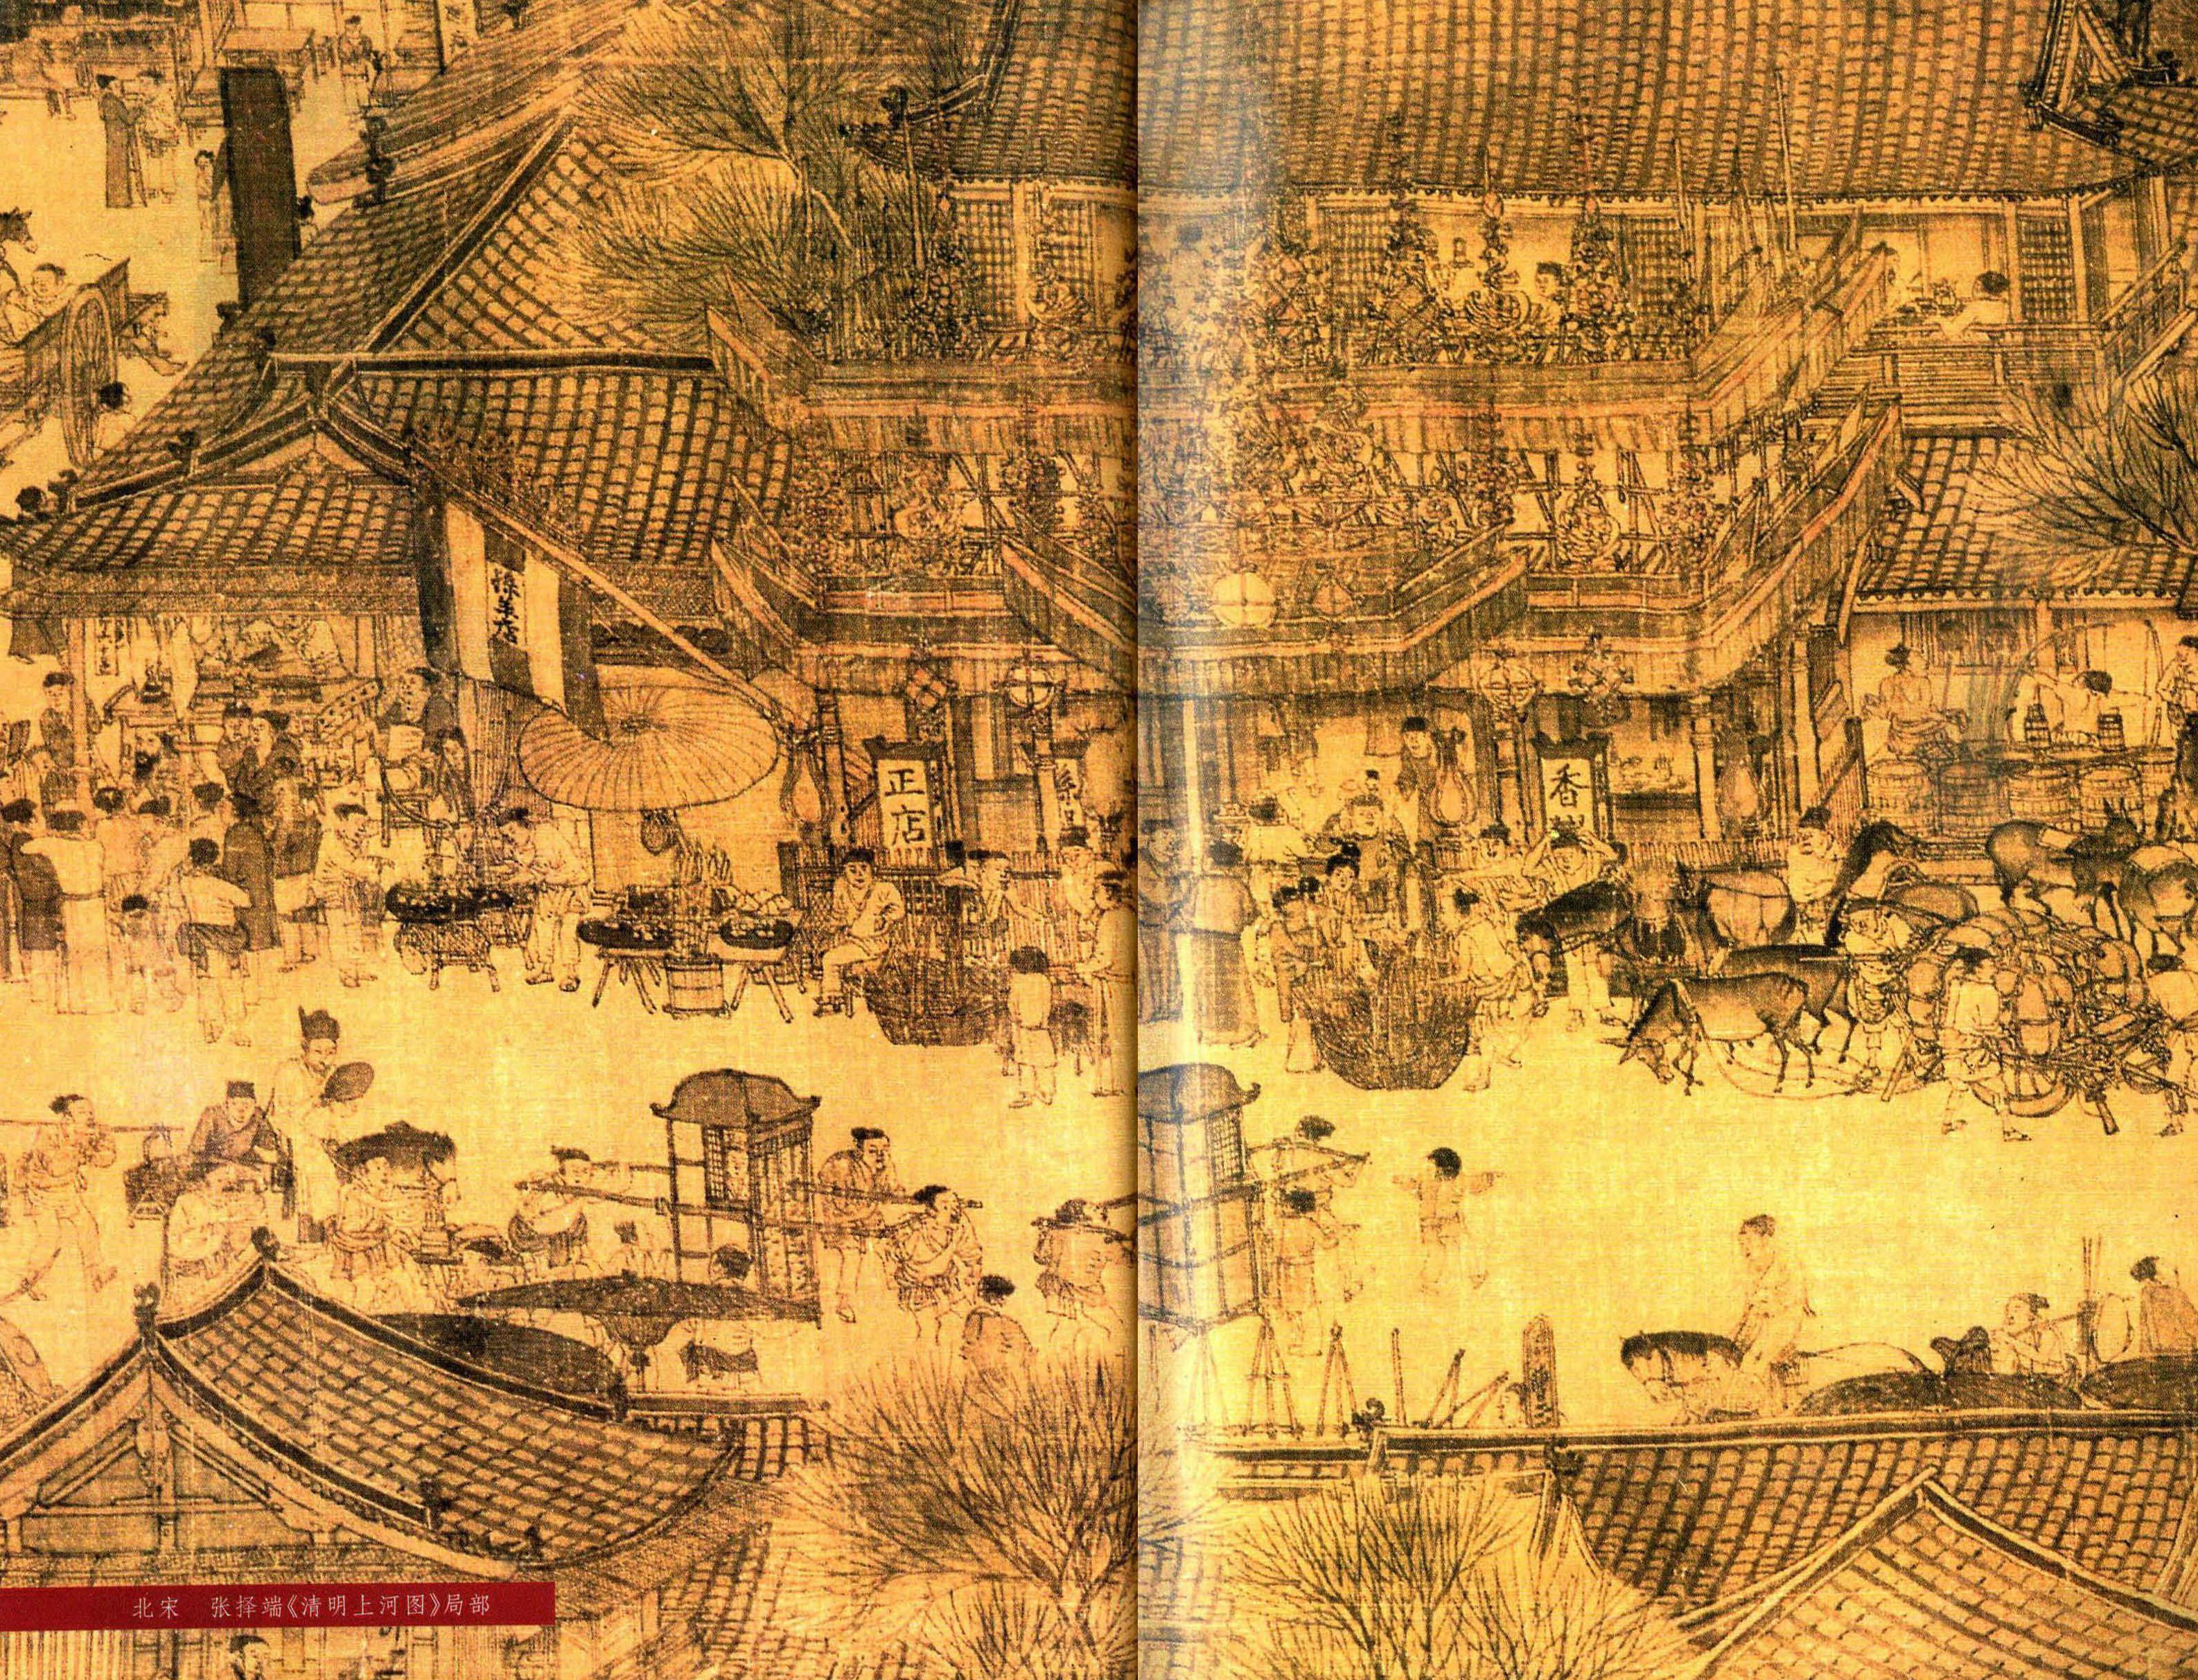 宋元时期:以福建为中心，茶业已至鼎盛，斗茶成为盛世之清尚